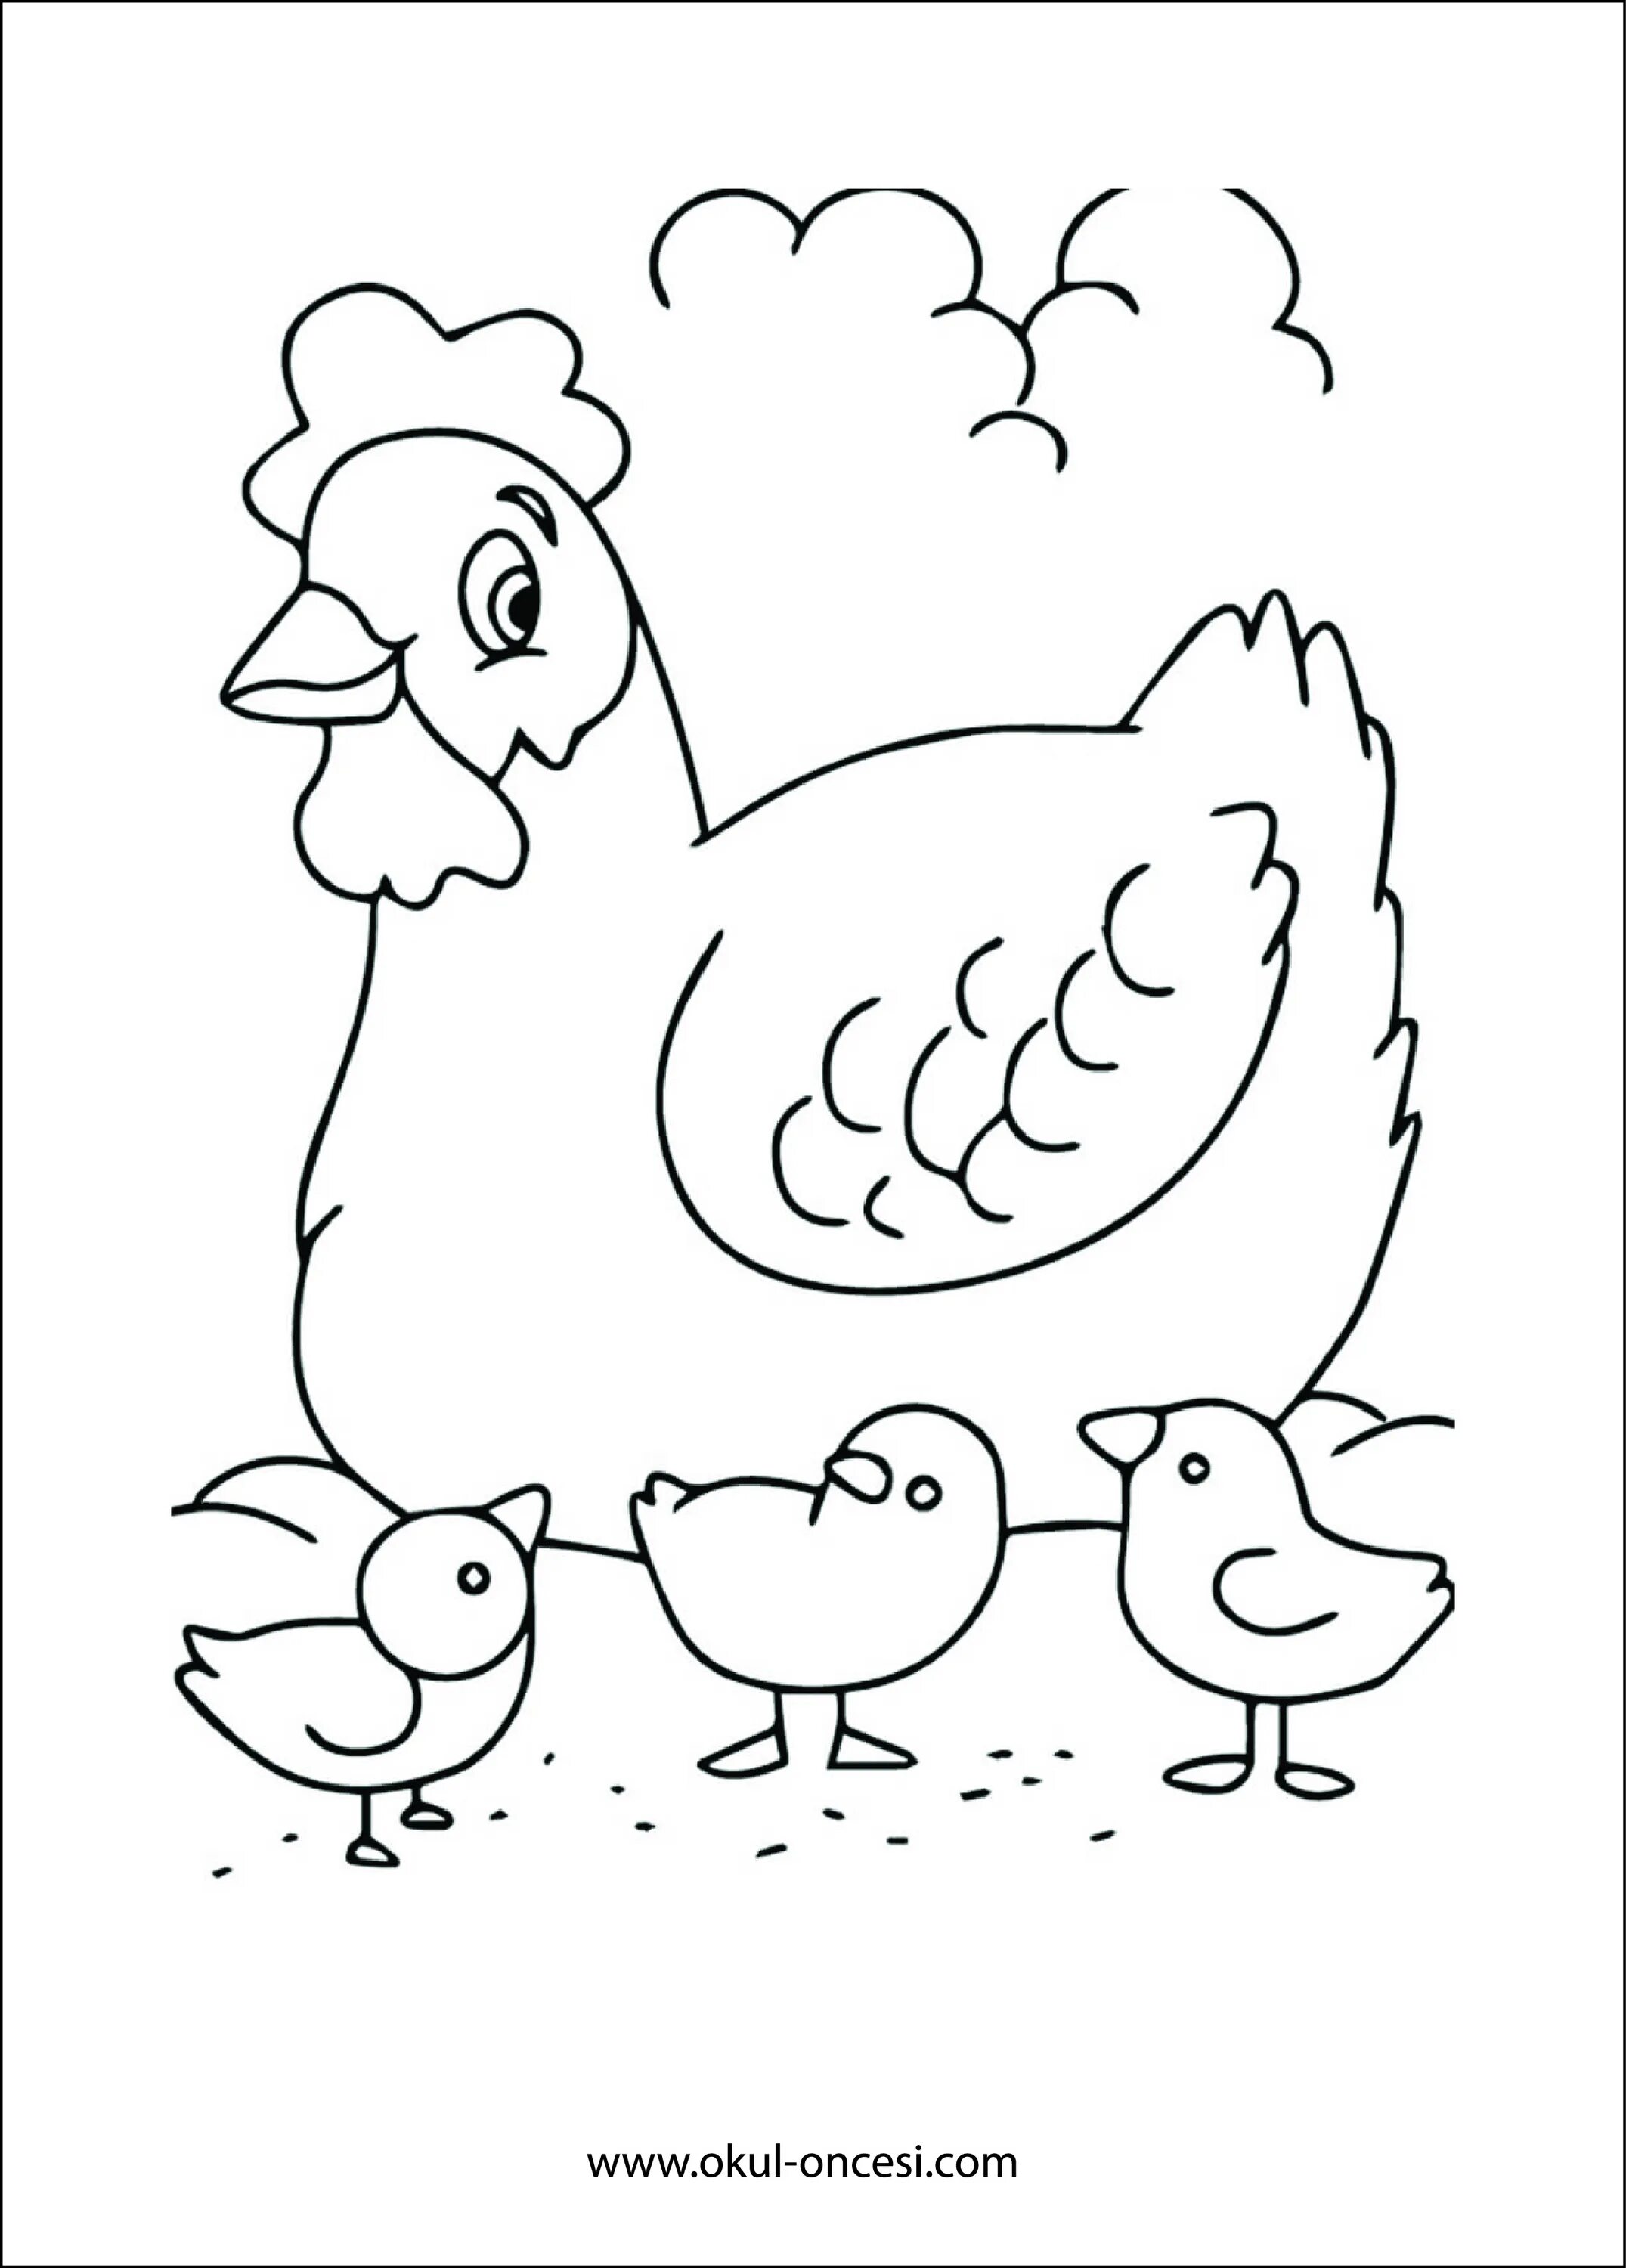 Раскраска 3 цыпленка. Раскраска курица с цыплятами. Курочка раскраска. Раскраска Курочка с цыплятами для детей. Курица раскраска для детей.